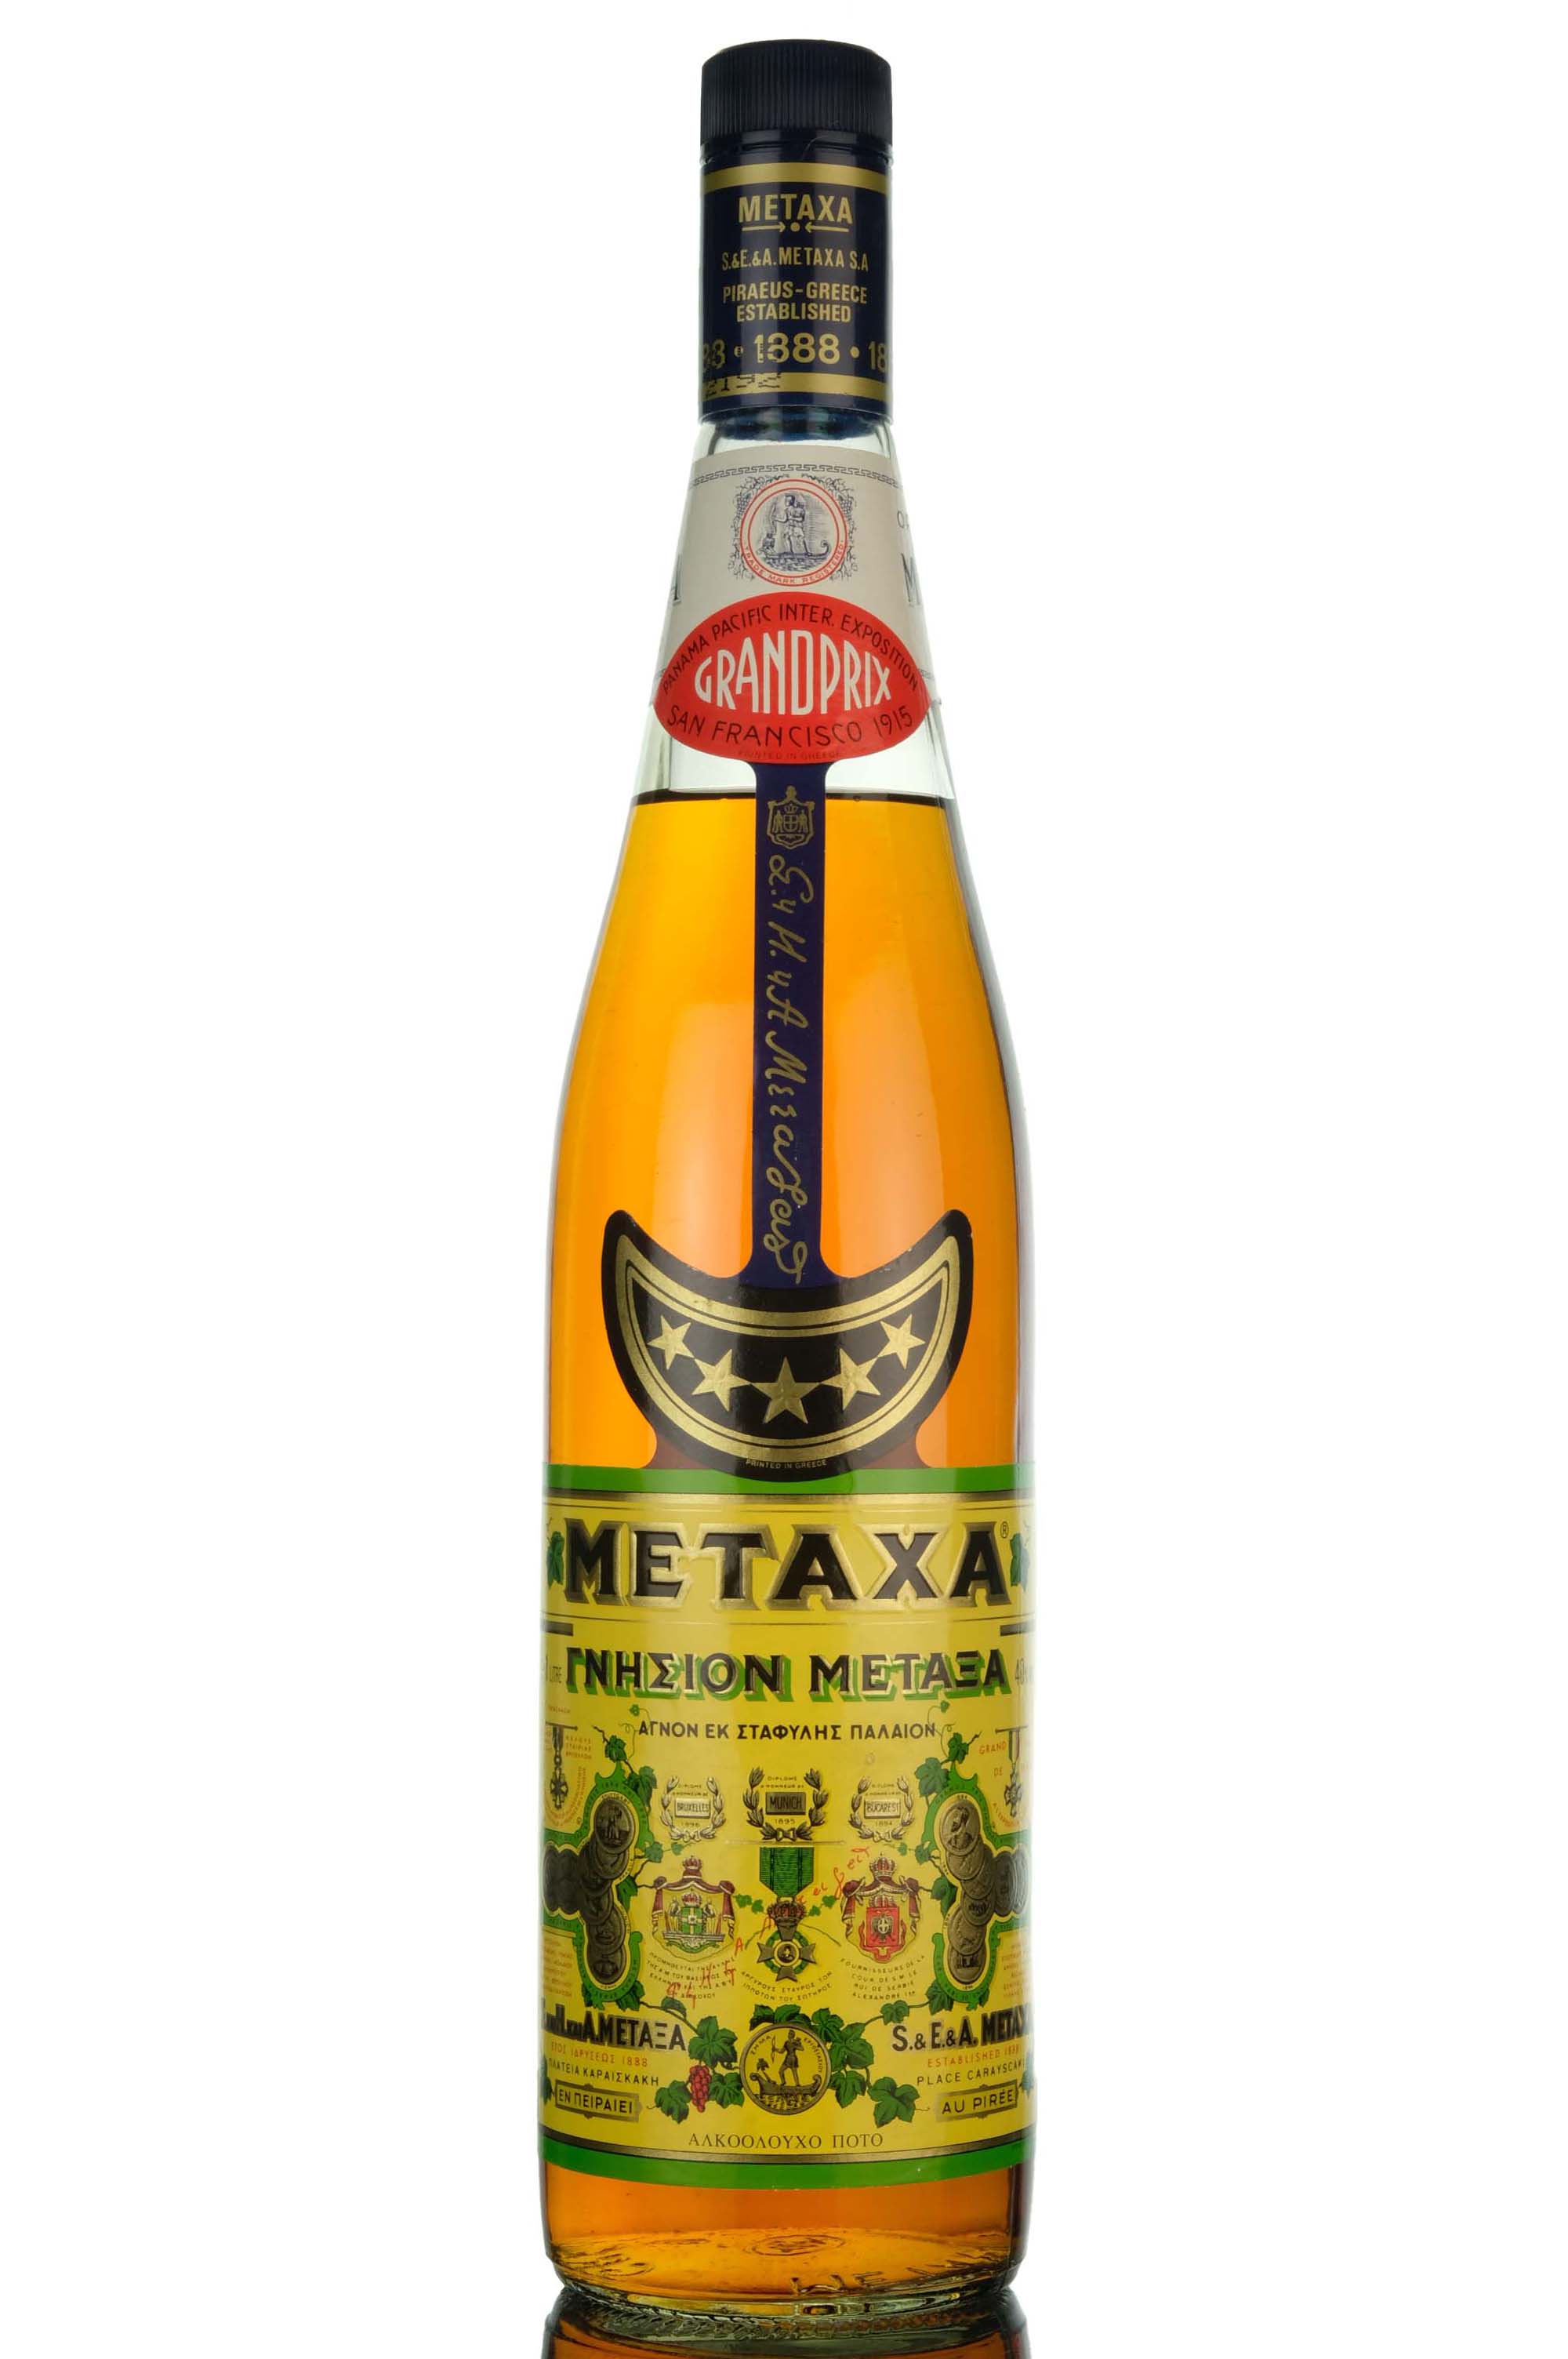 Metaxa 5 Star Greek Brandy - 1 Litre